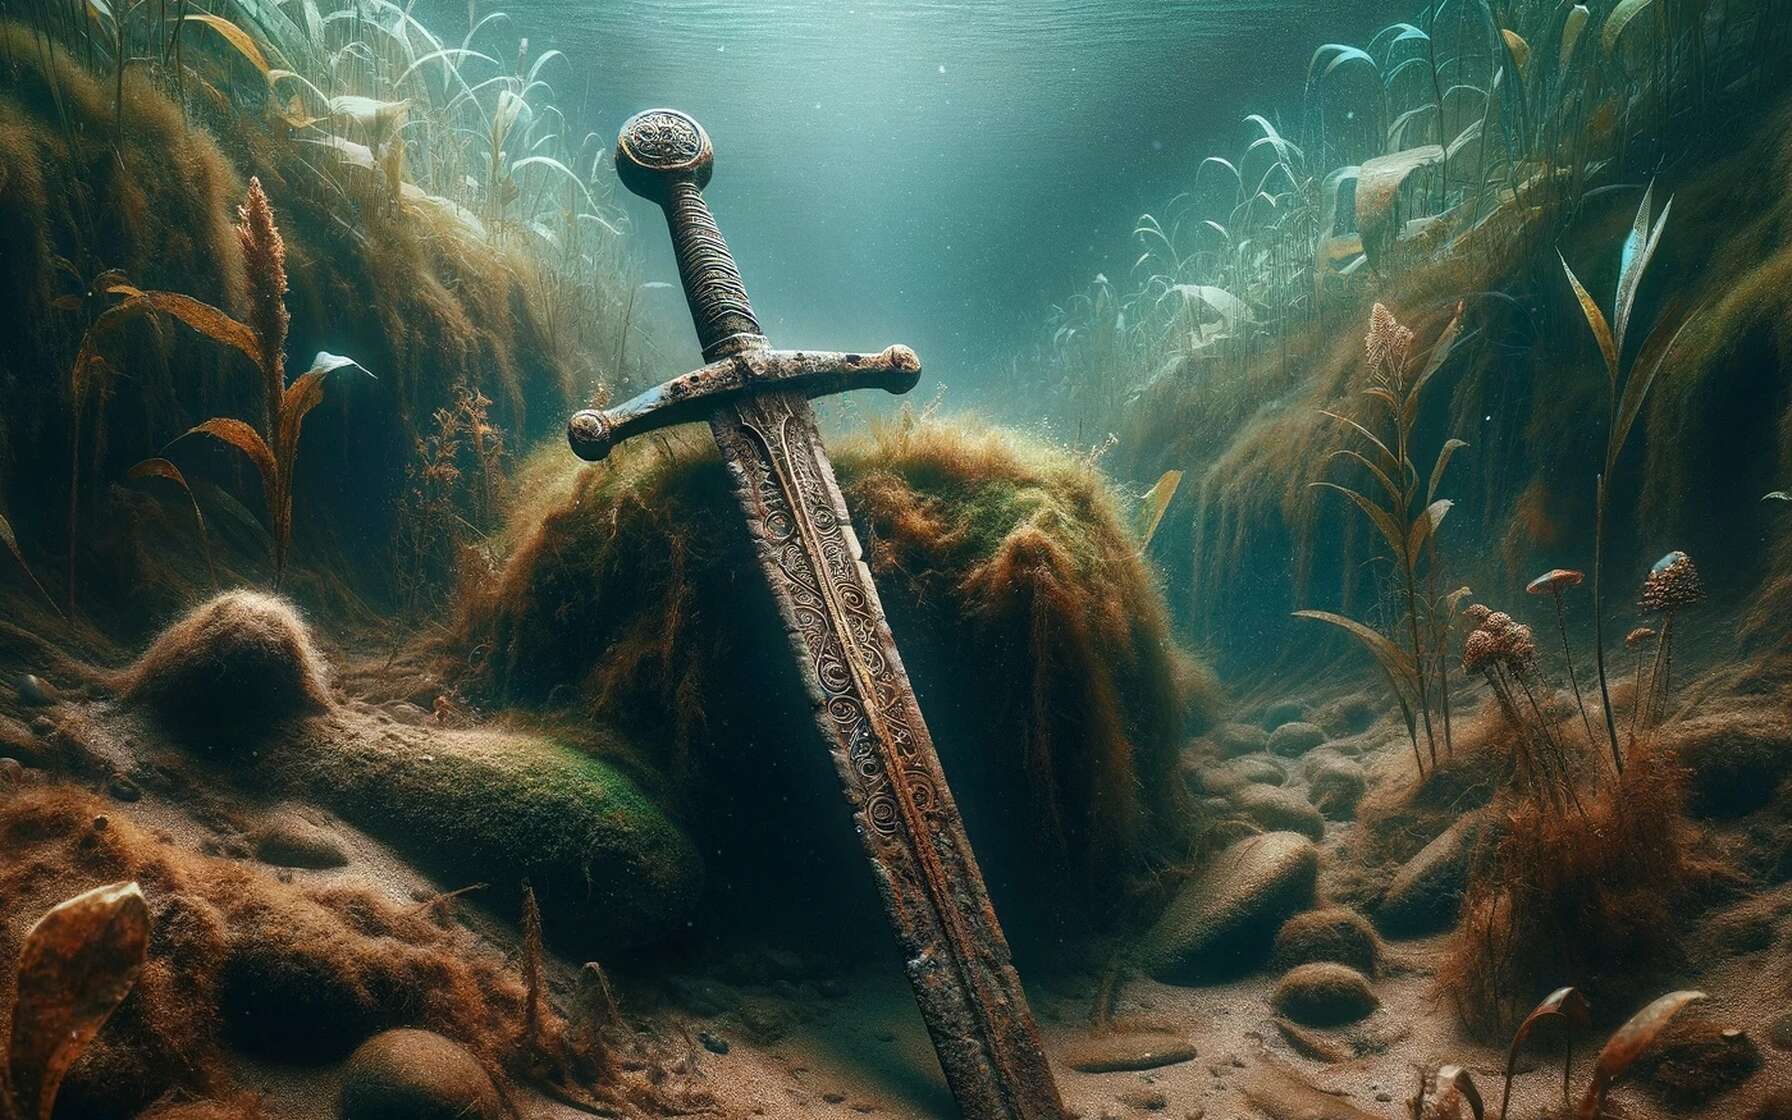 Une intrigante épée perdue il y a 1 000 ans retrouvée au fond d'un fleuve en Pologne